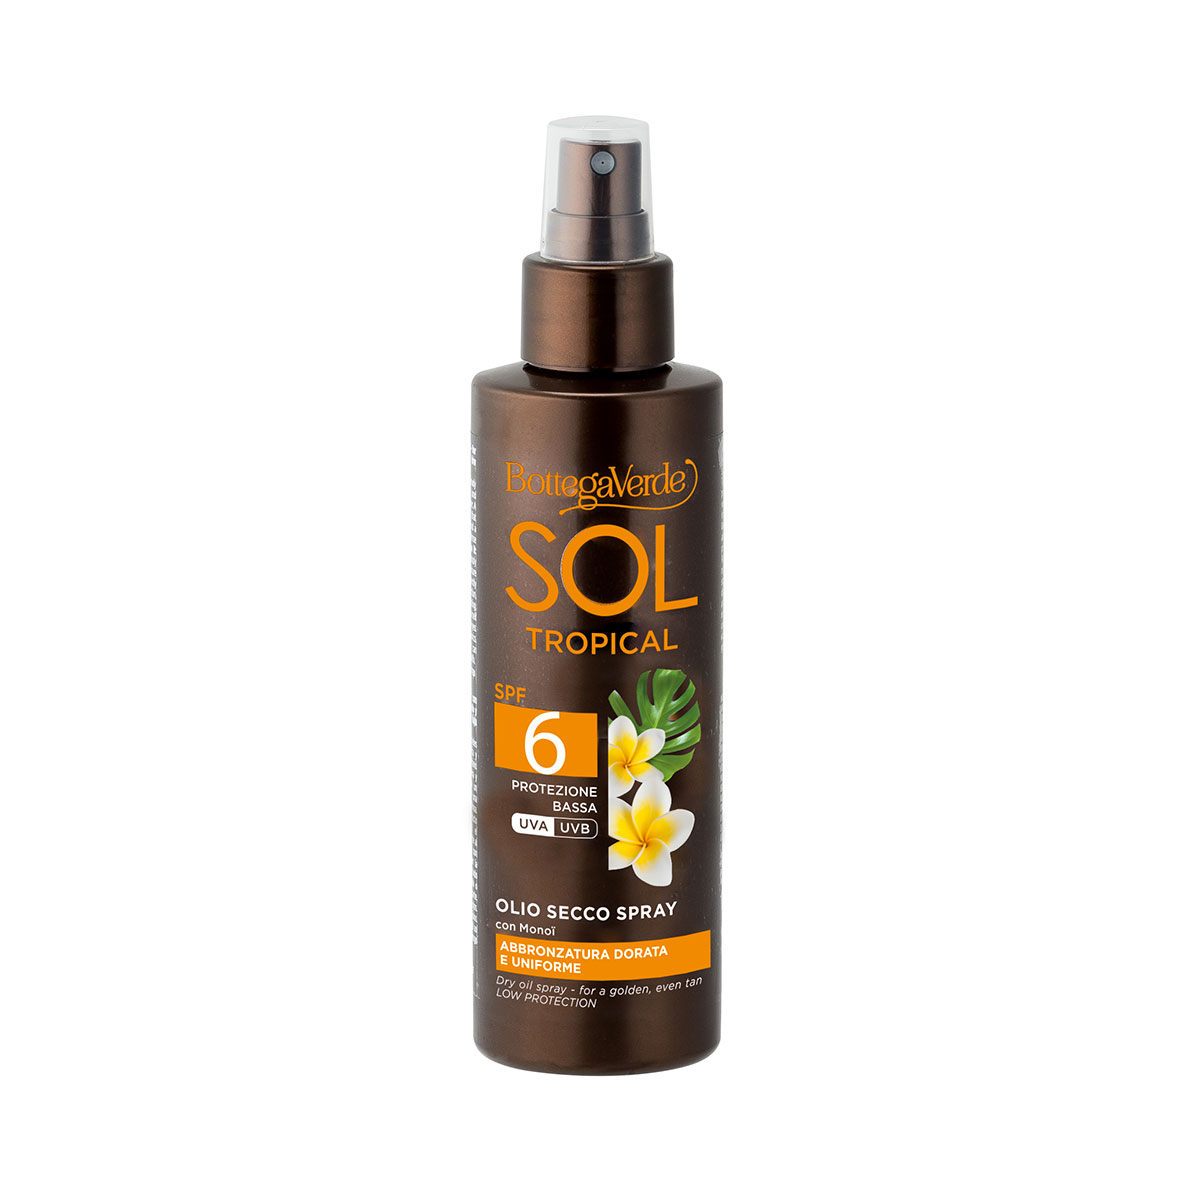 SOL Tropical - Aceite seco en spray - bronceado dorado y uniforme - con Monoi - protección baja SPF 6